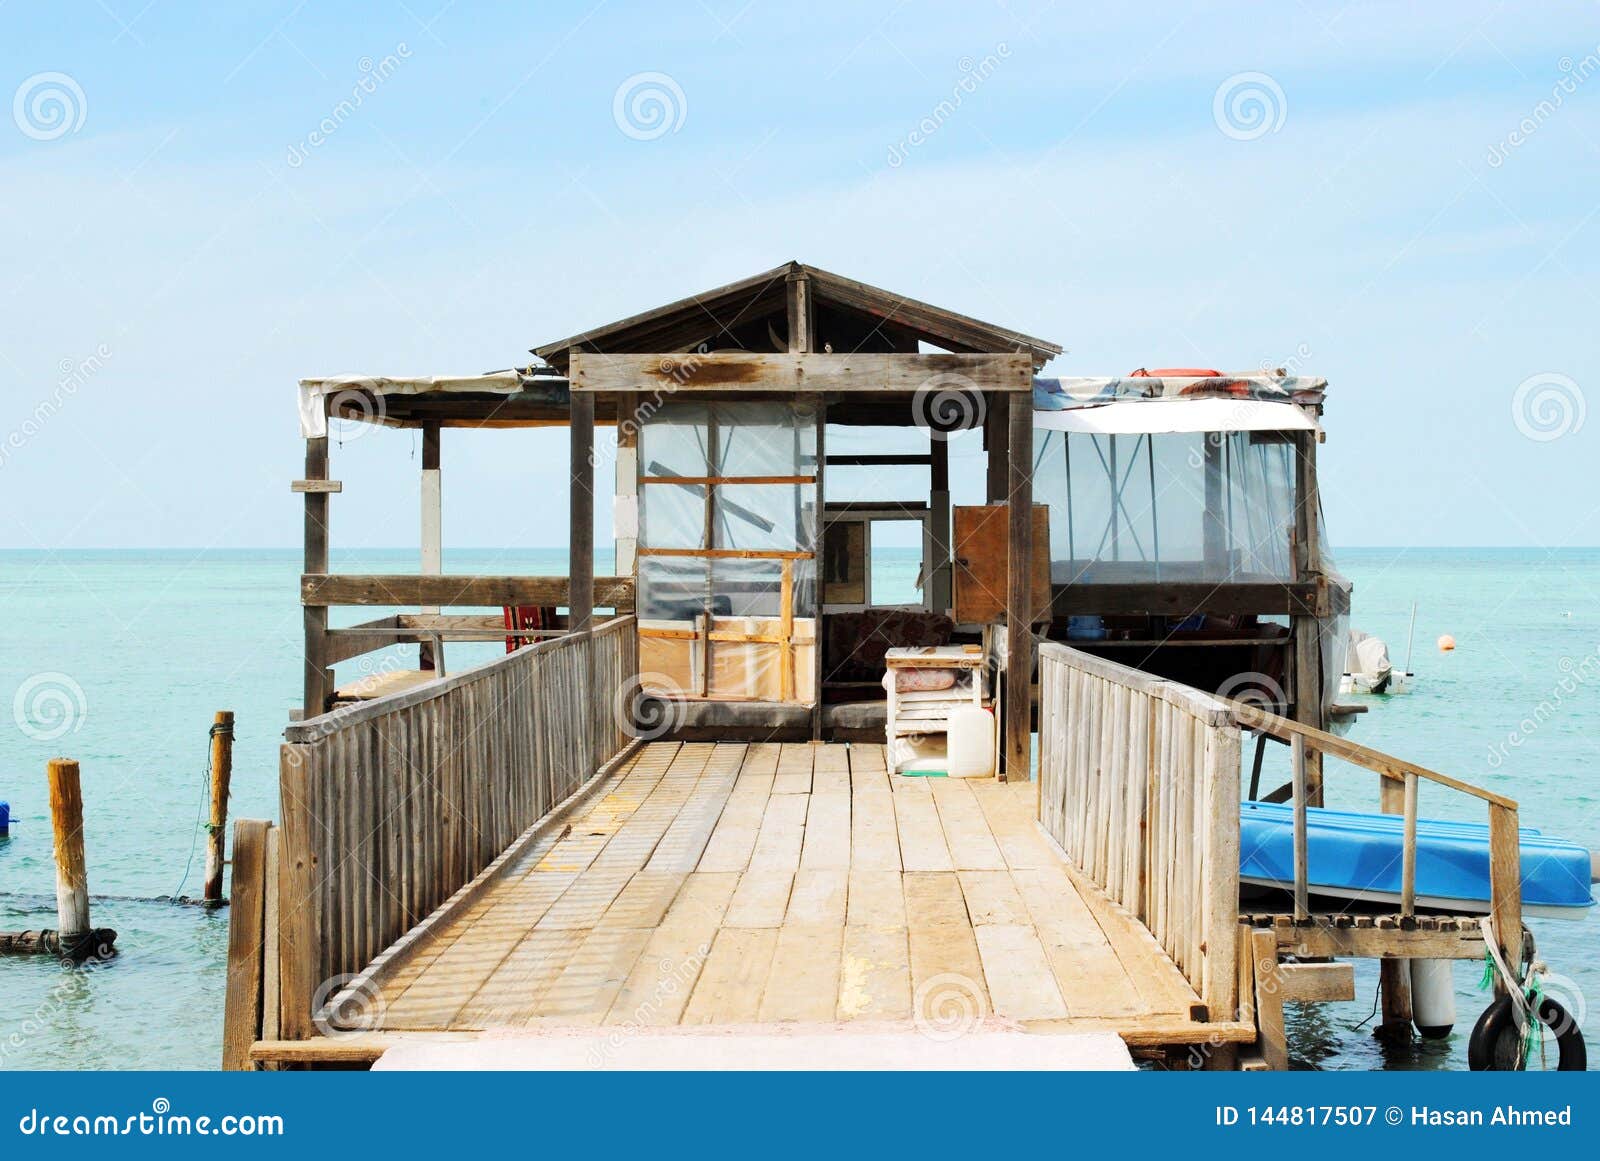 La Cabaña Del Pescador En La Playa Imagen de archivo - Imagen de coastline,  bahrein: 144817507